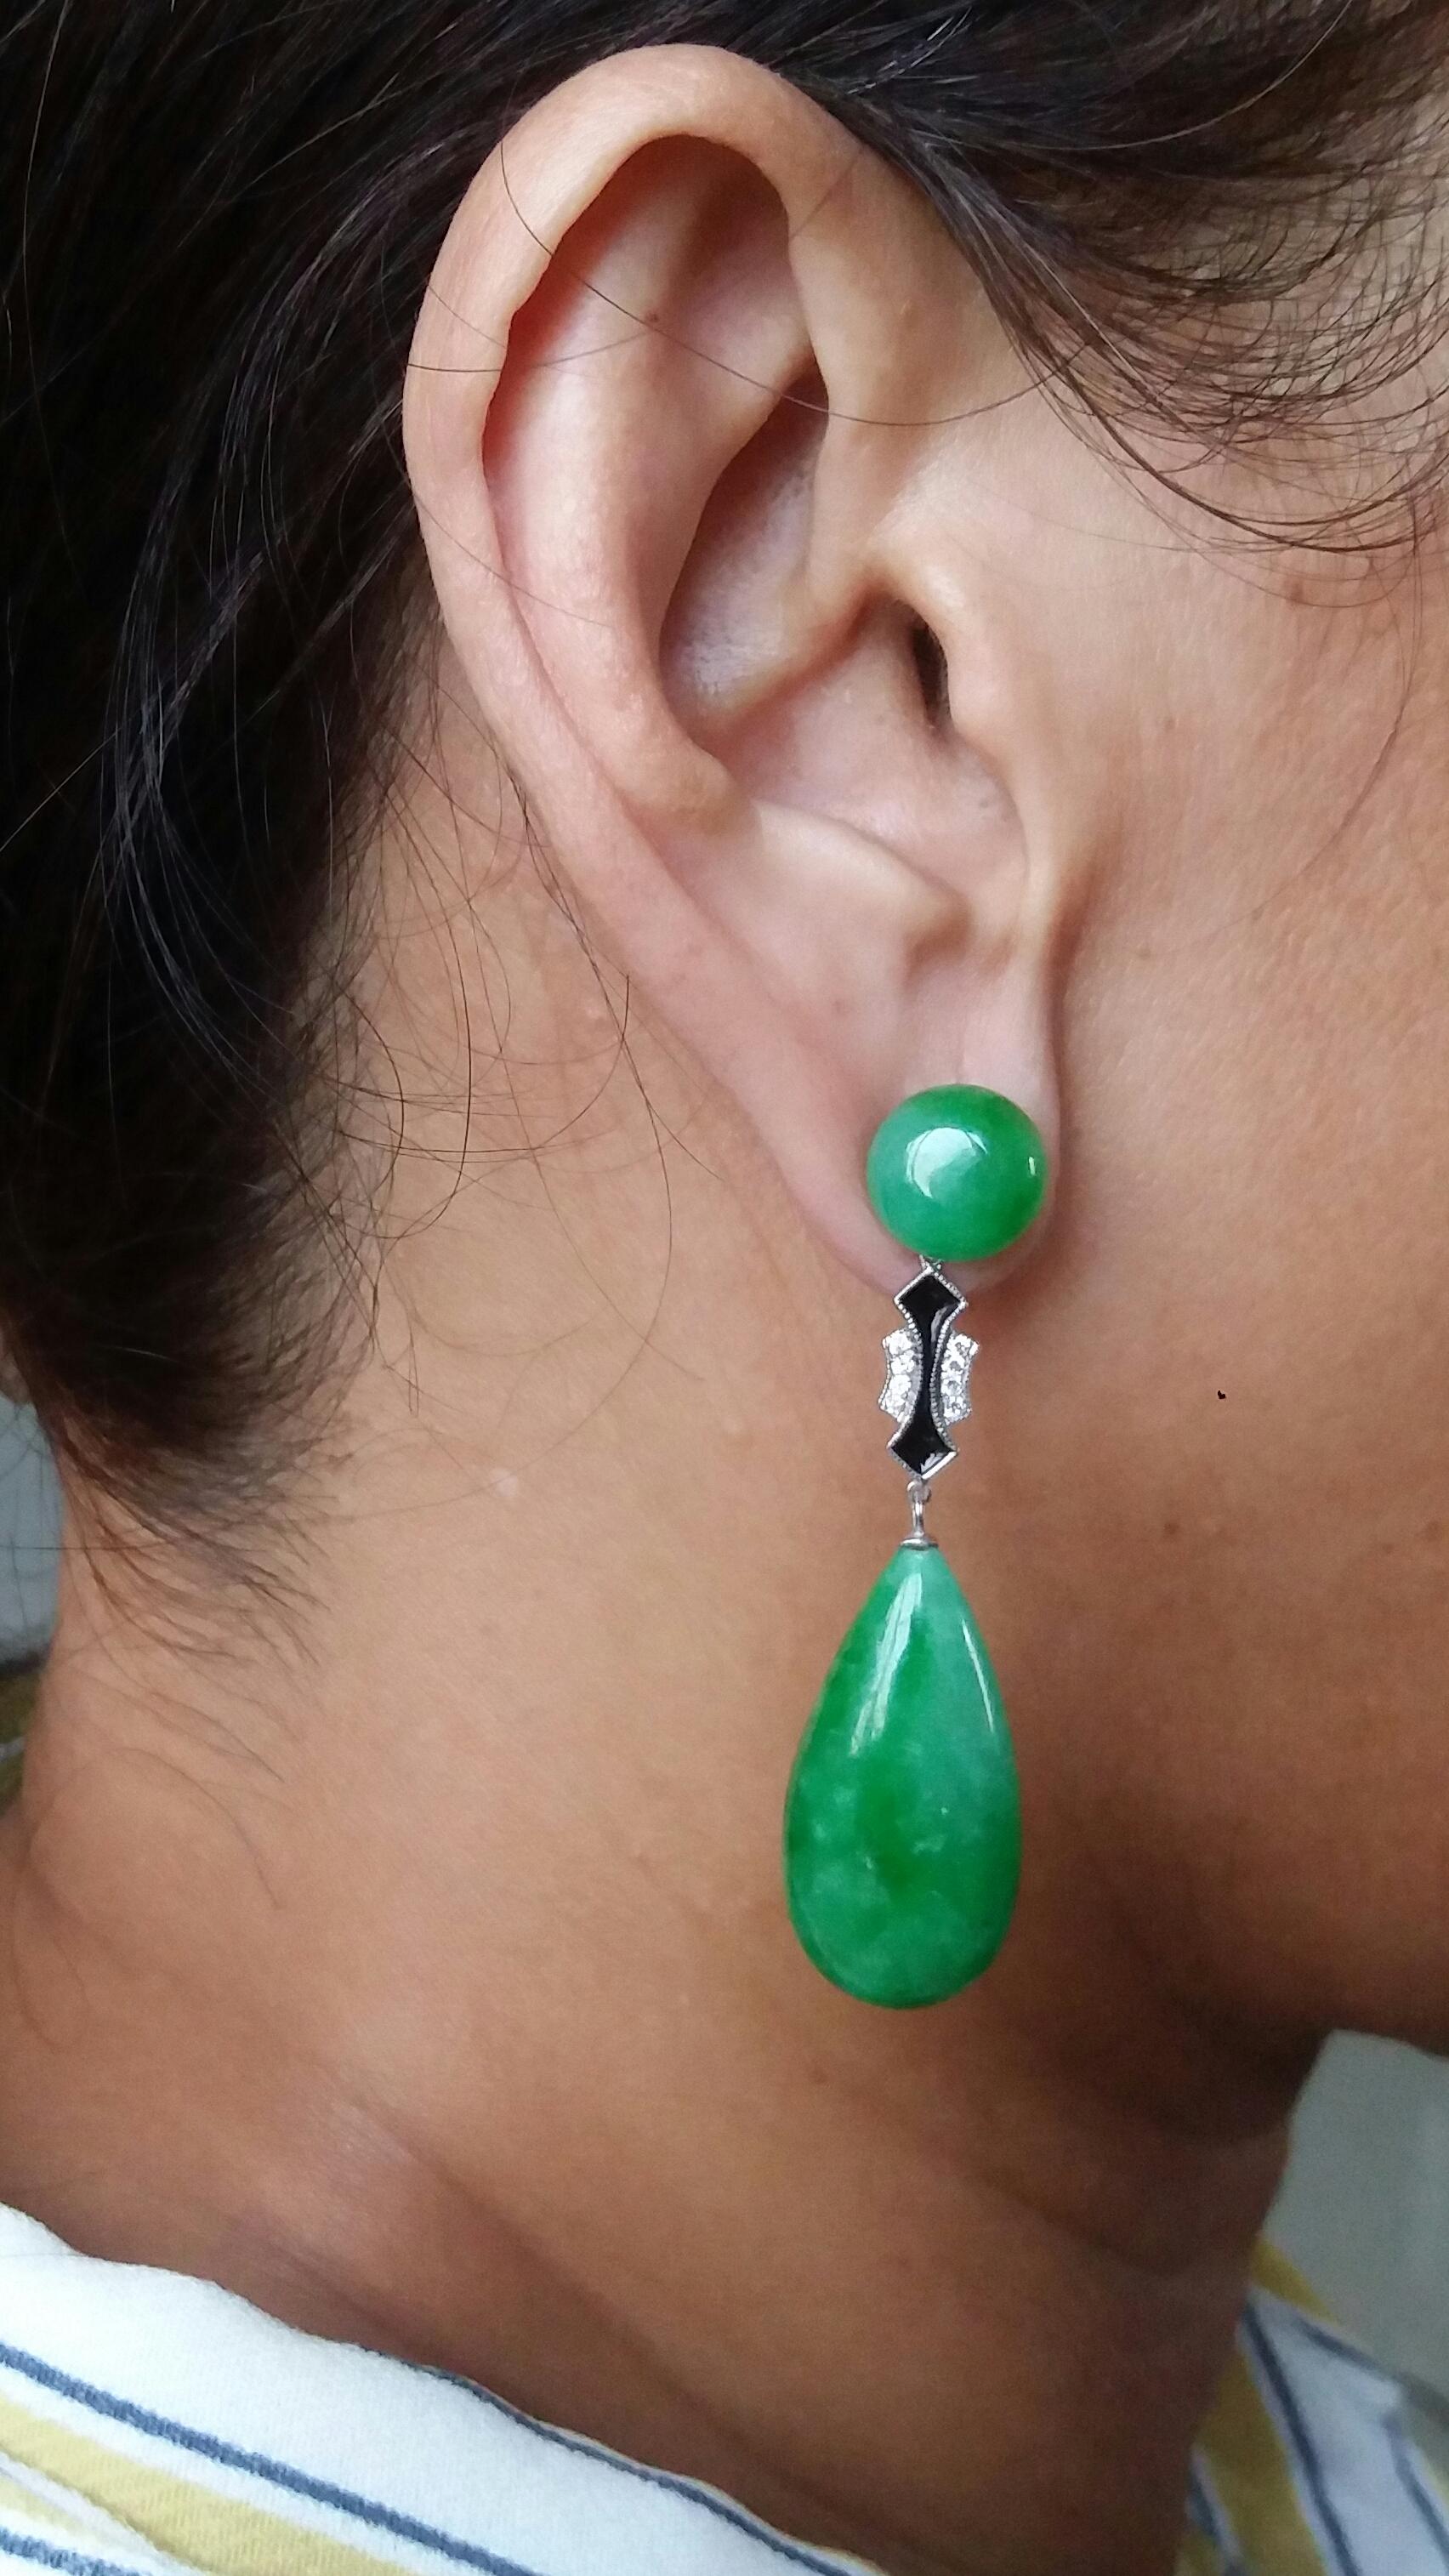 90s earrings